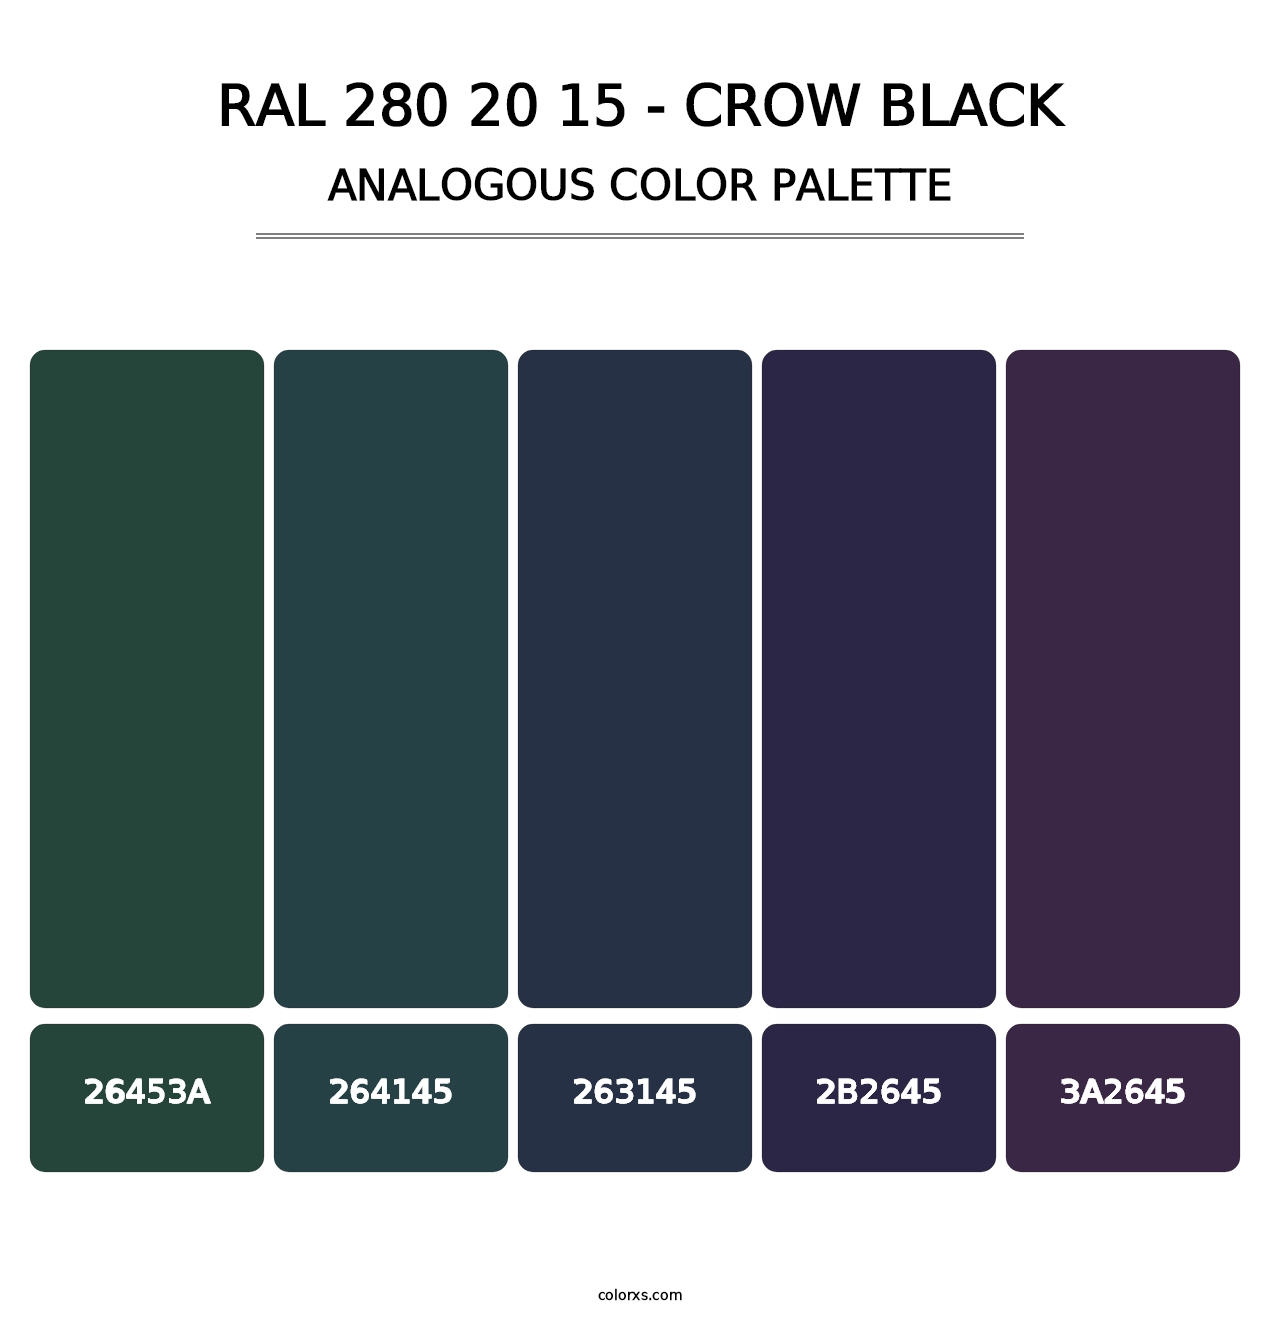 RAL 280 20 15 - Crow Black - Analogous Color Palette